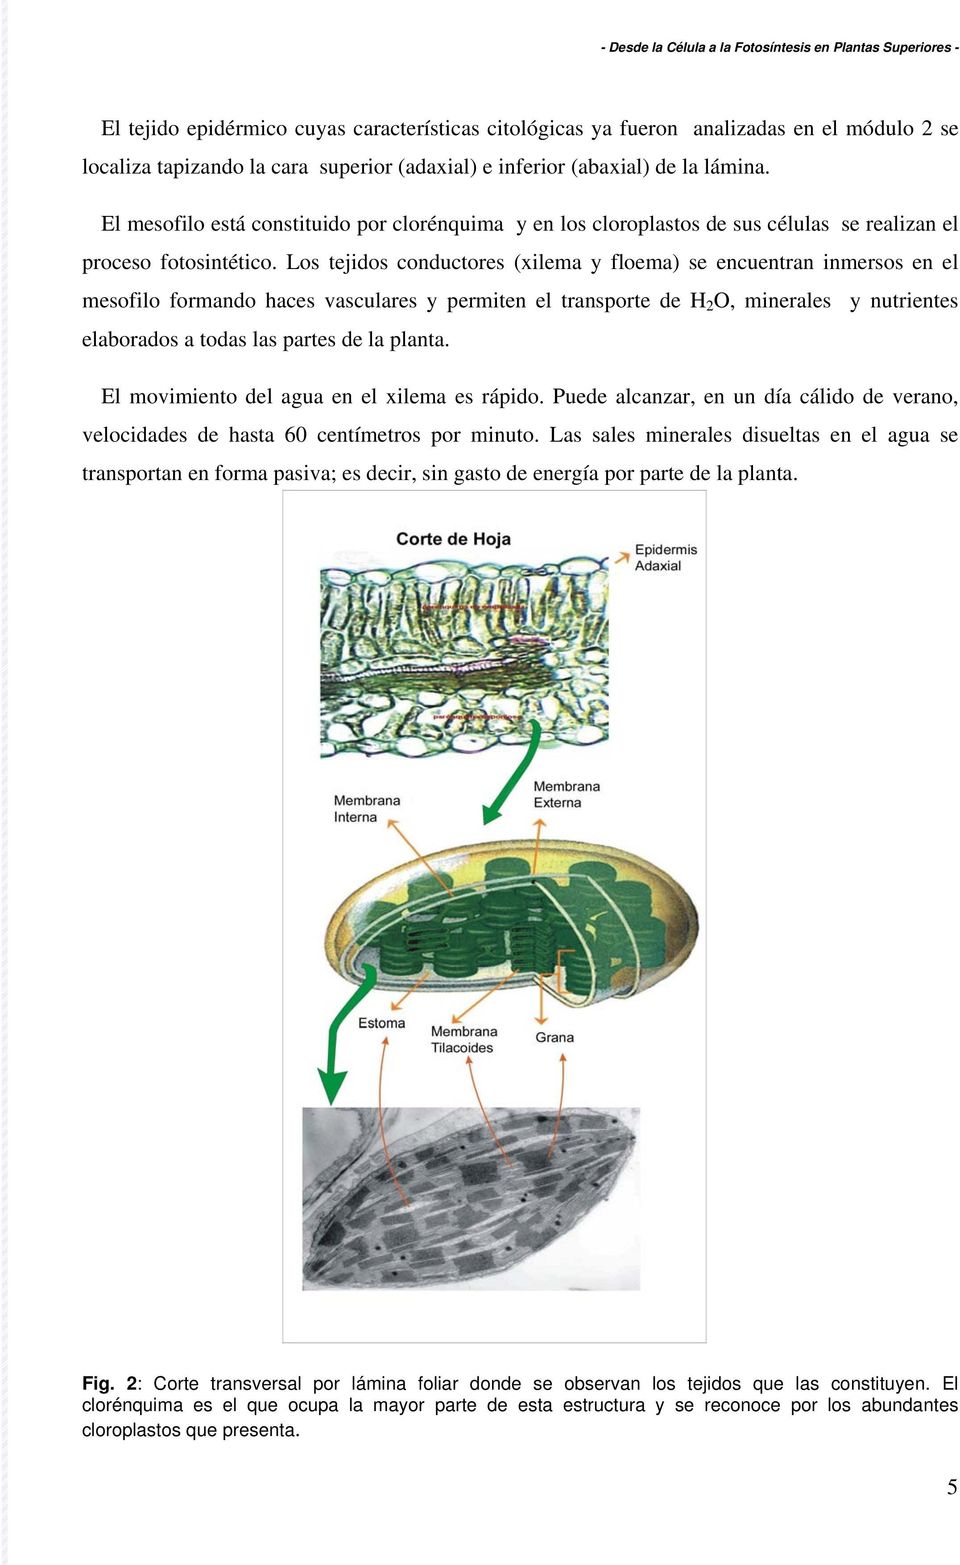 Los tejidos conductores (xilema y floema) se encuentran inmersos en el mesofilo formando haces vasculares y permiten el transporte de H 2 O, minerales y nutrientes elaborados a todas las partes de la